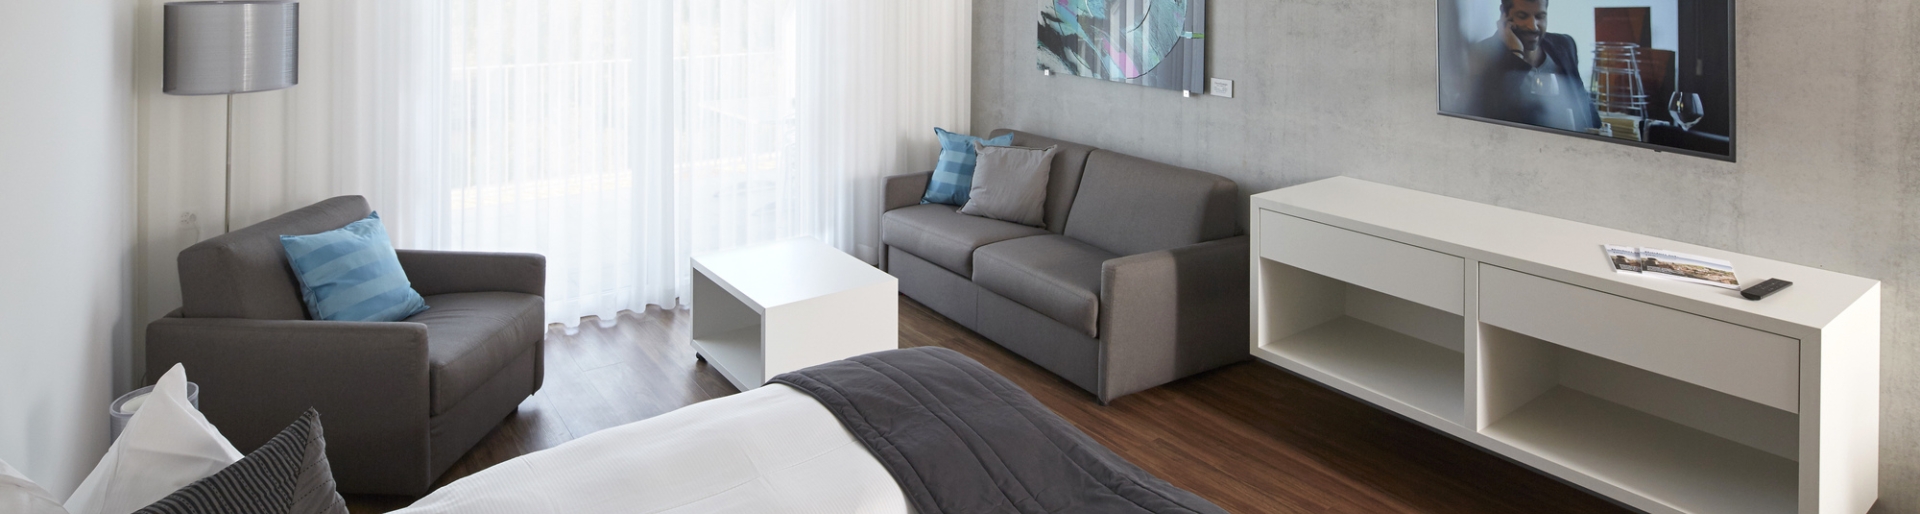 Attikazimmer im Hotel in Baden mit modernen Möbeln und Terrassenzugang 